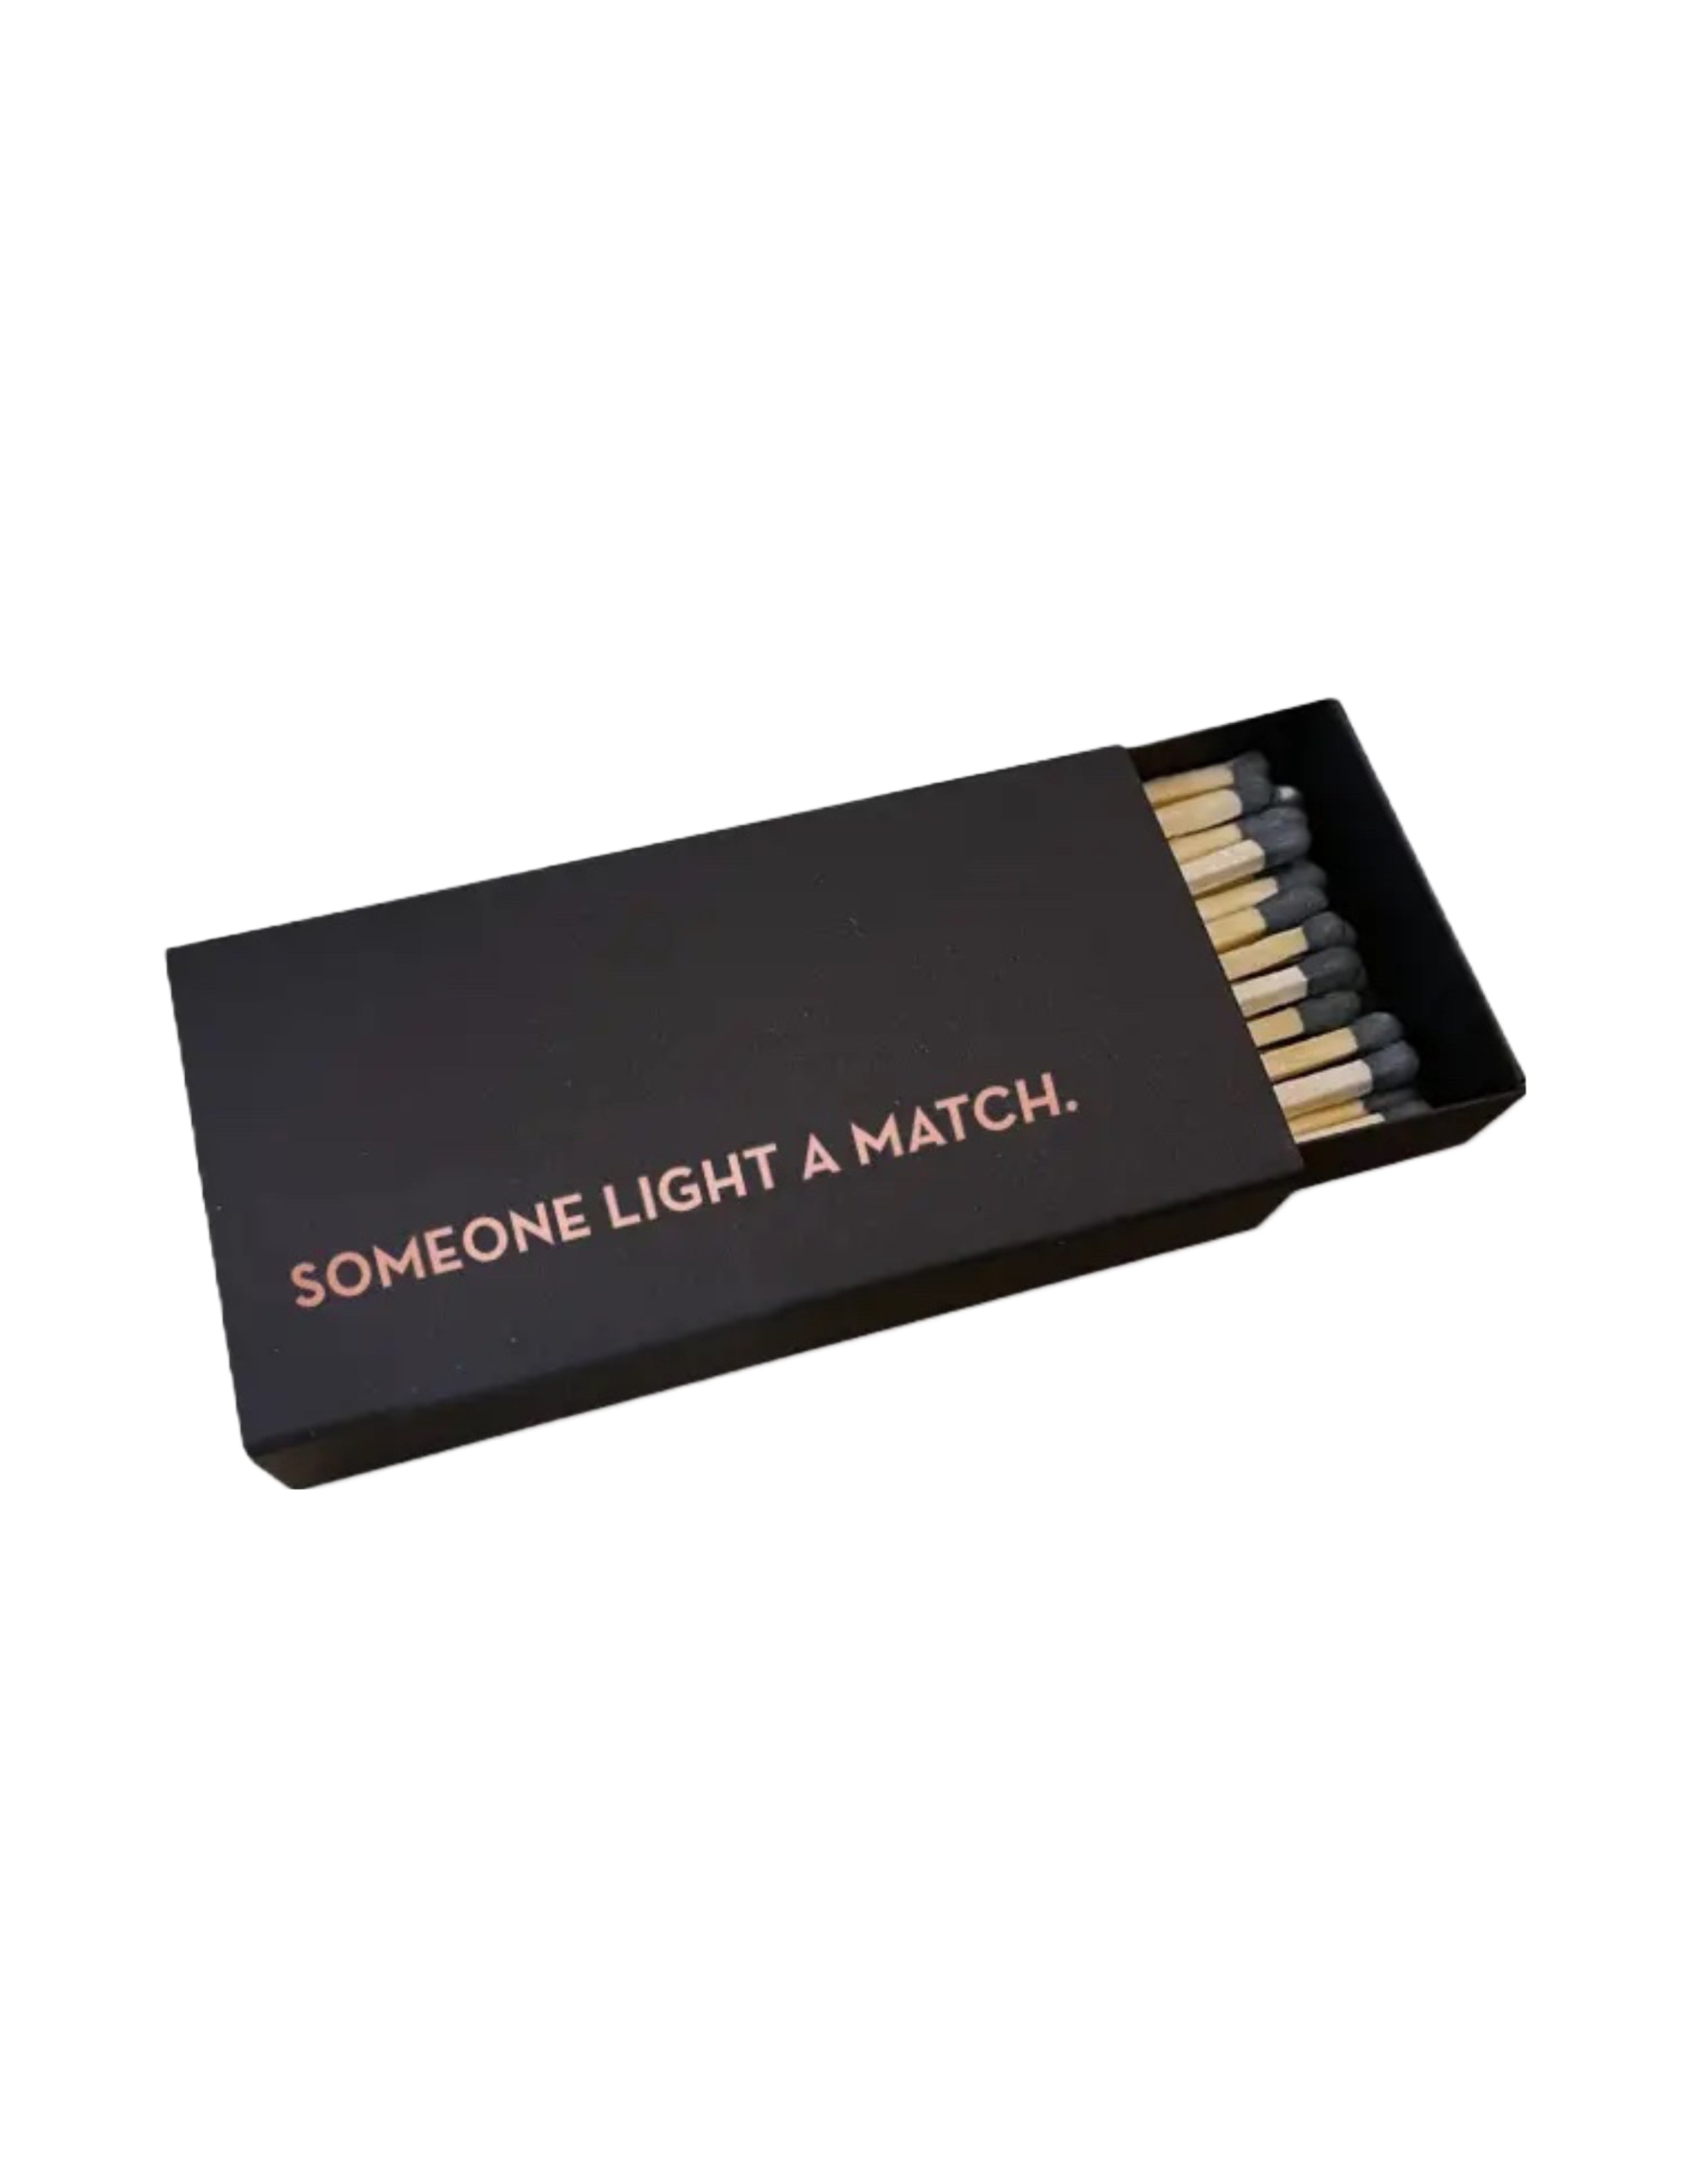 Light A Match Matches